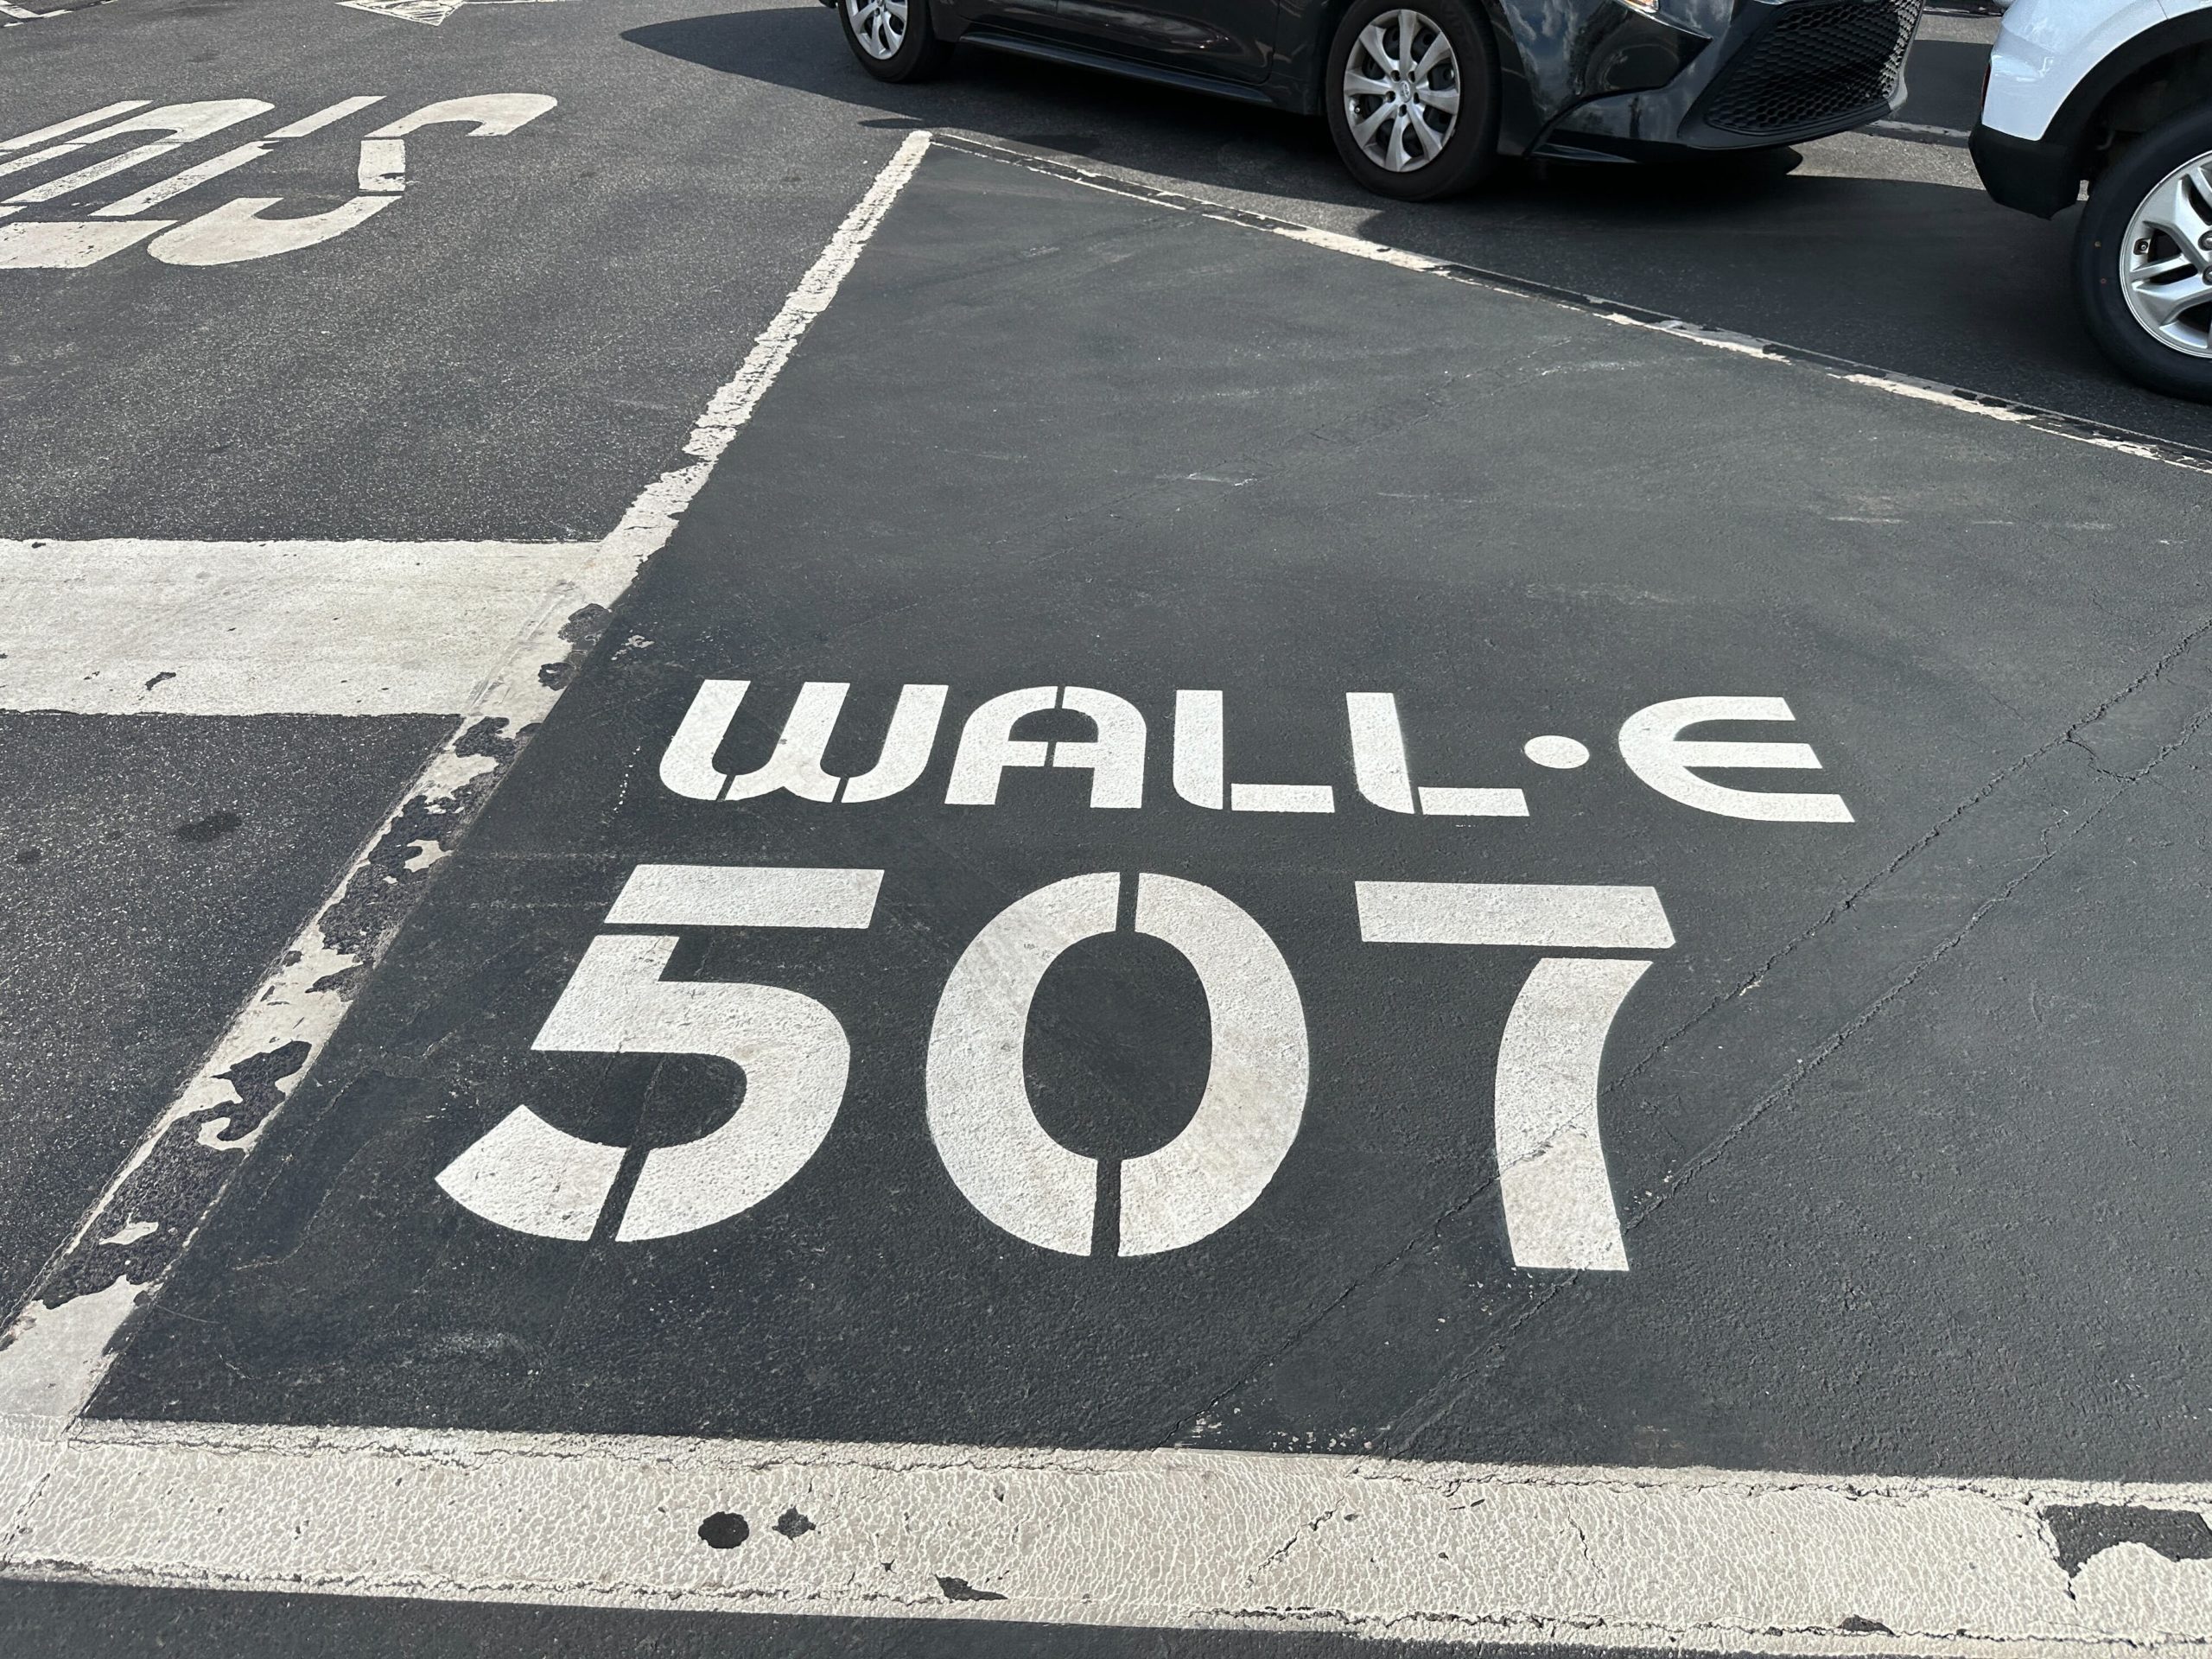 epcot wall-e parking